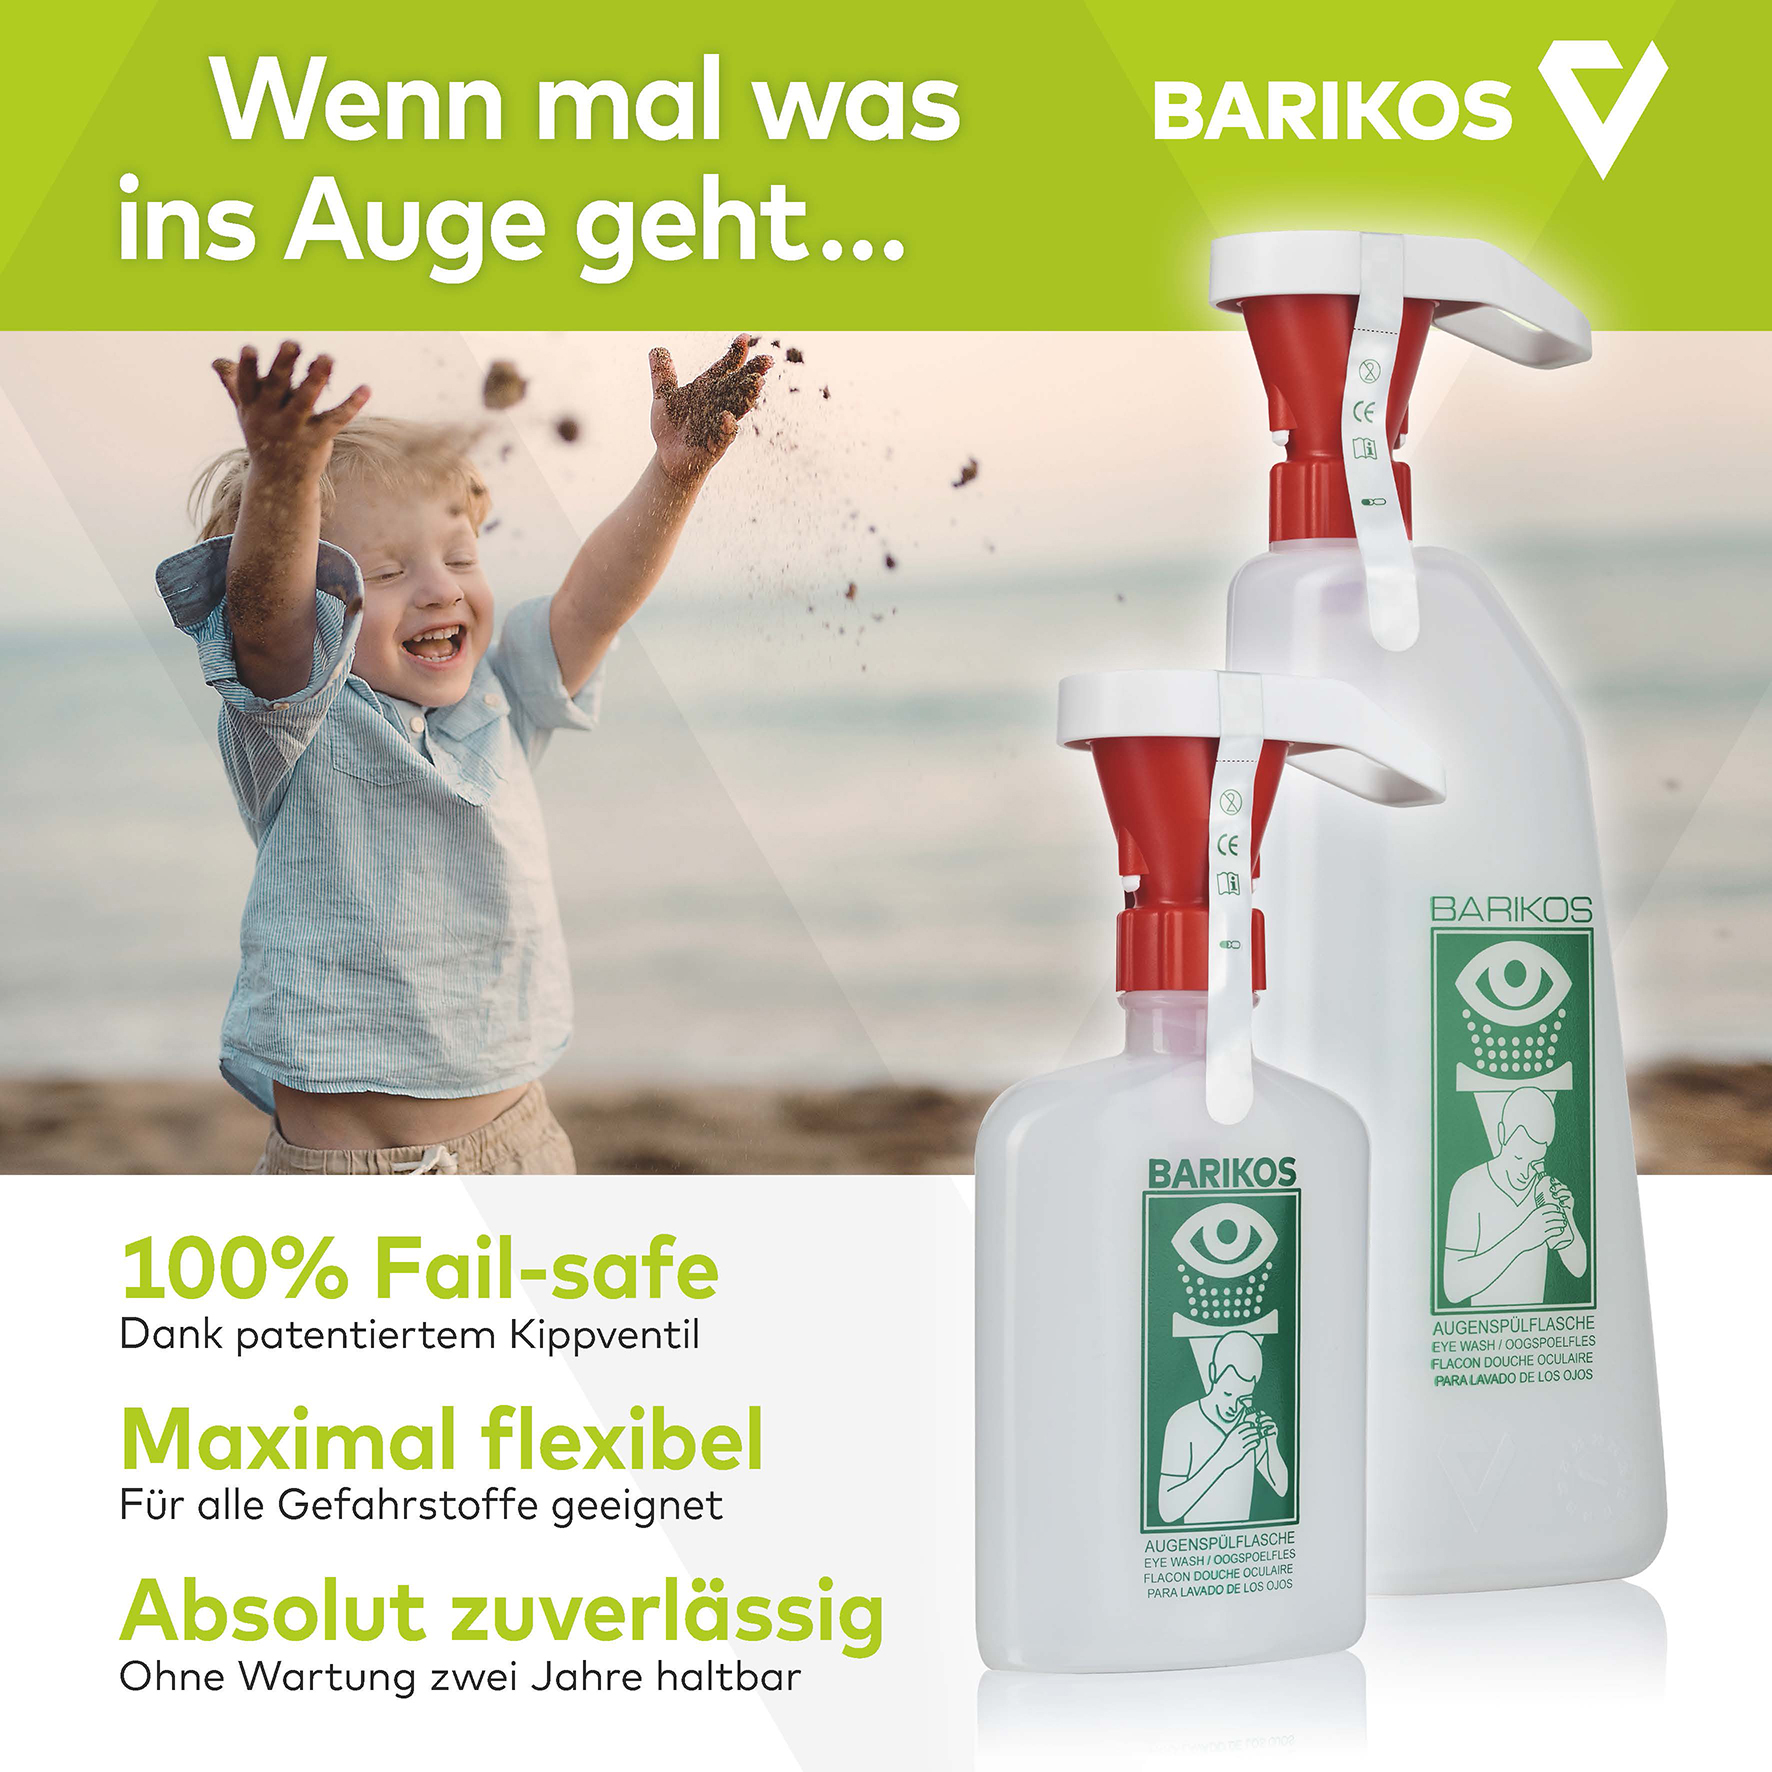 BARIKOS Augenspülflaschen-Set: Augenspülflasche 620 ml inkl. Wandbehälter, Erste  Hilfe Augendusche